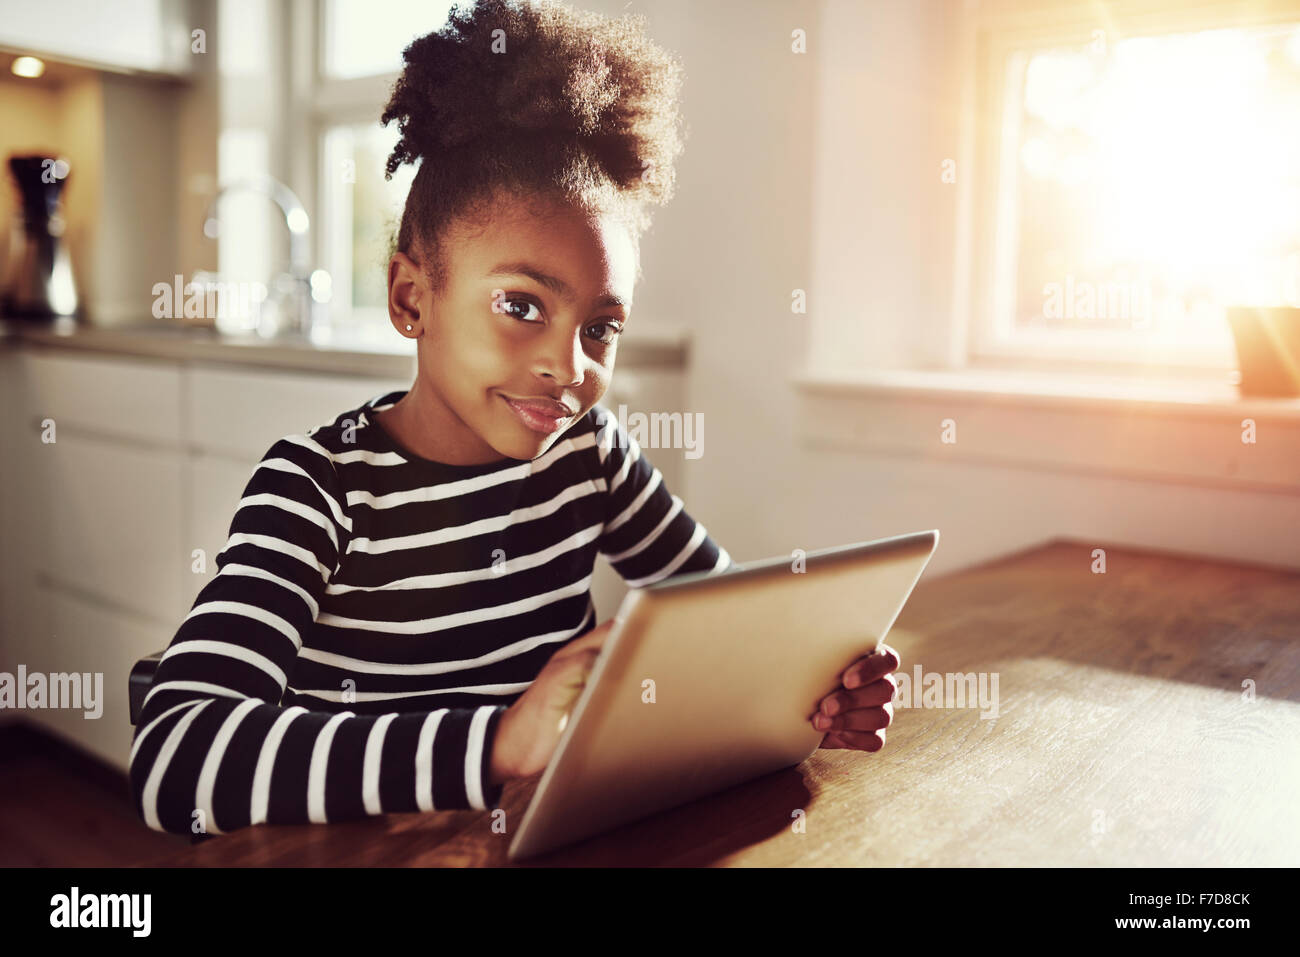 Young black girl assis regardant la caméra avec une expression pensive alors qu'elle navigue sur internet sur une tablette comput Banque D'Images